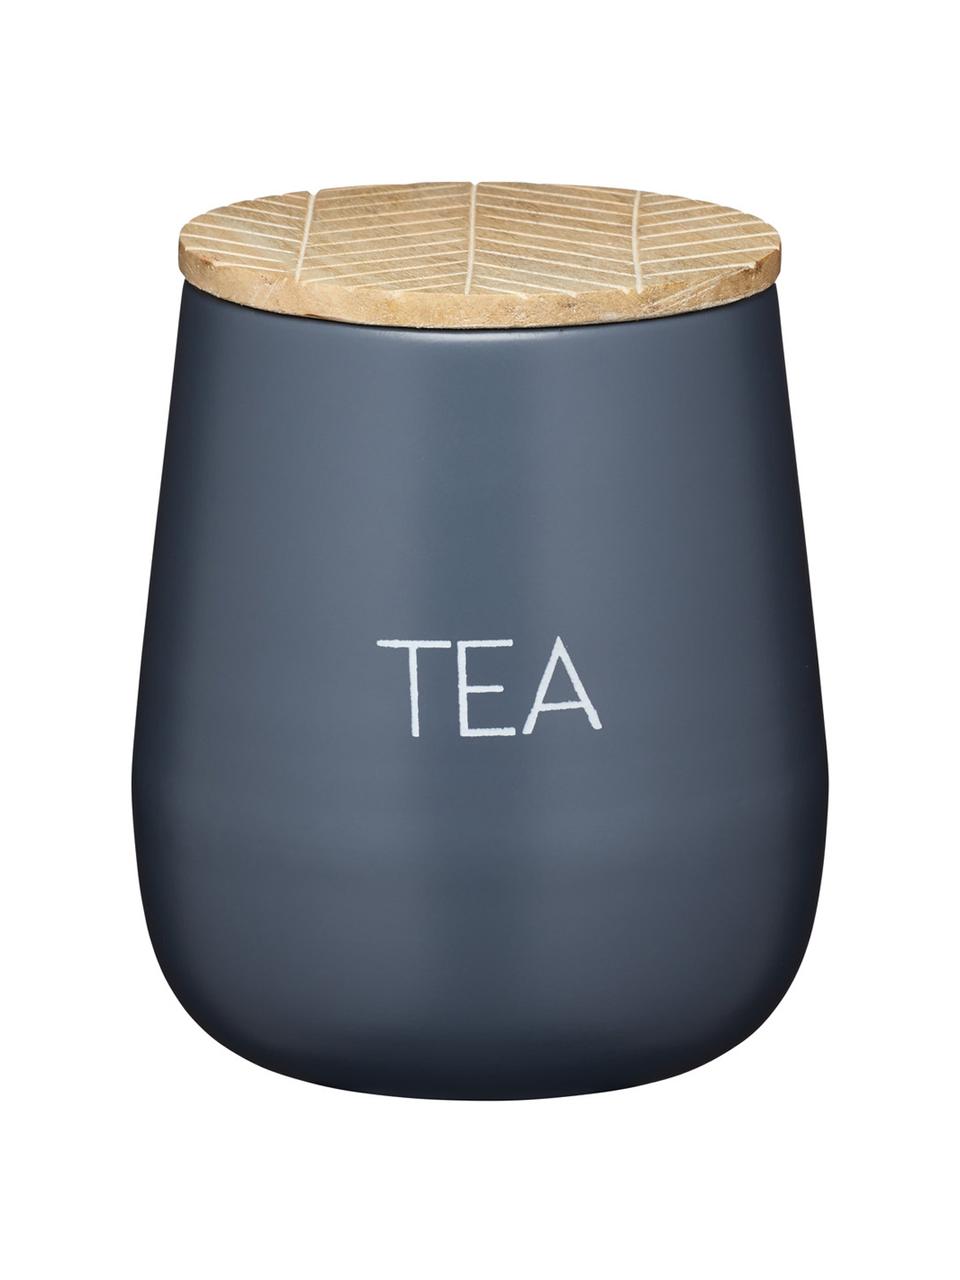 Dóza Serenity Tea, Ø 13 cm x V 15 cm, Antracitová, dřevo, Ø 13 cm, V 15 cm, 1,6 l